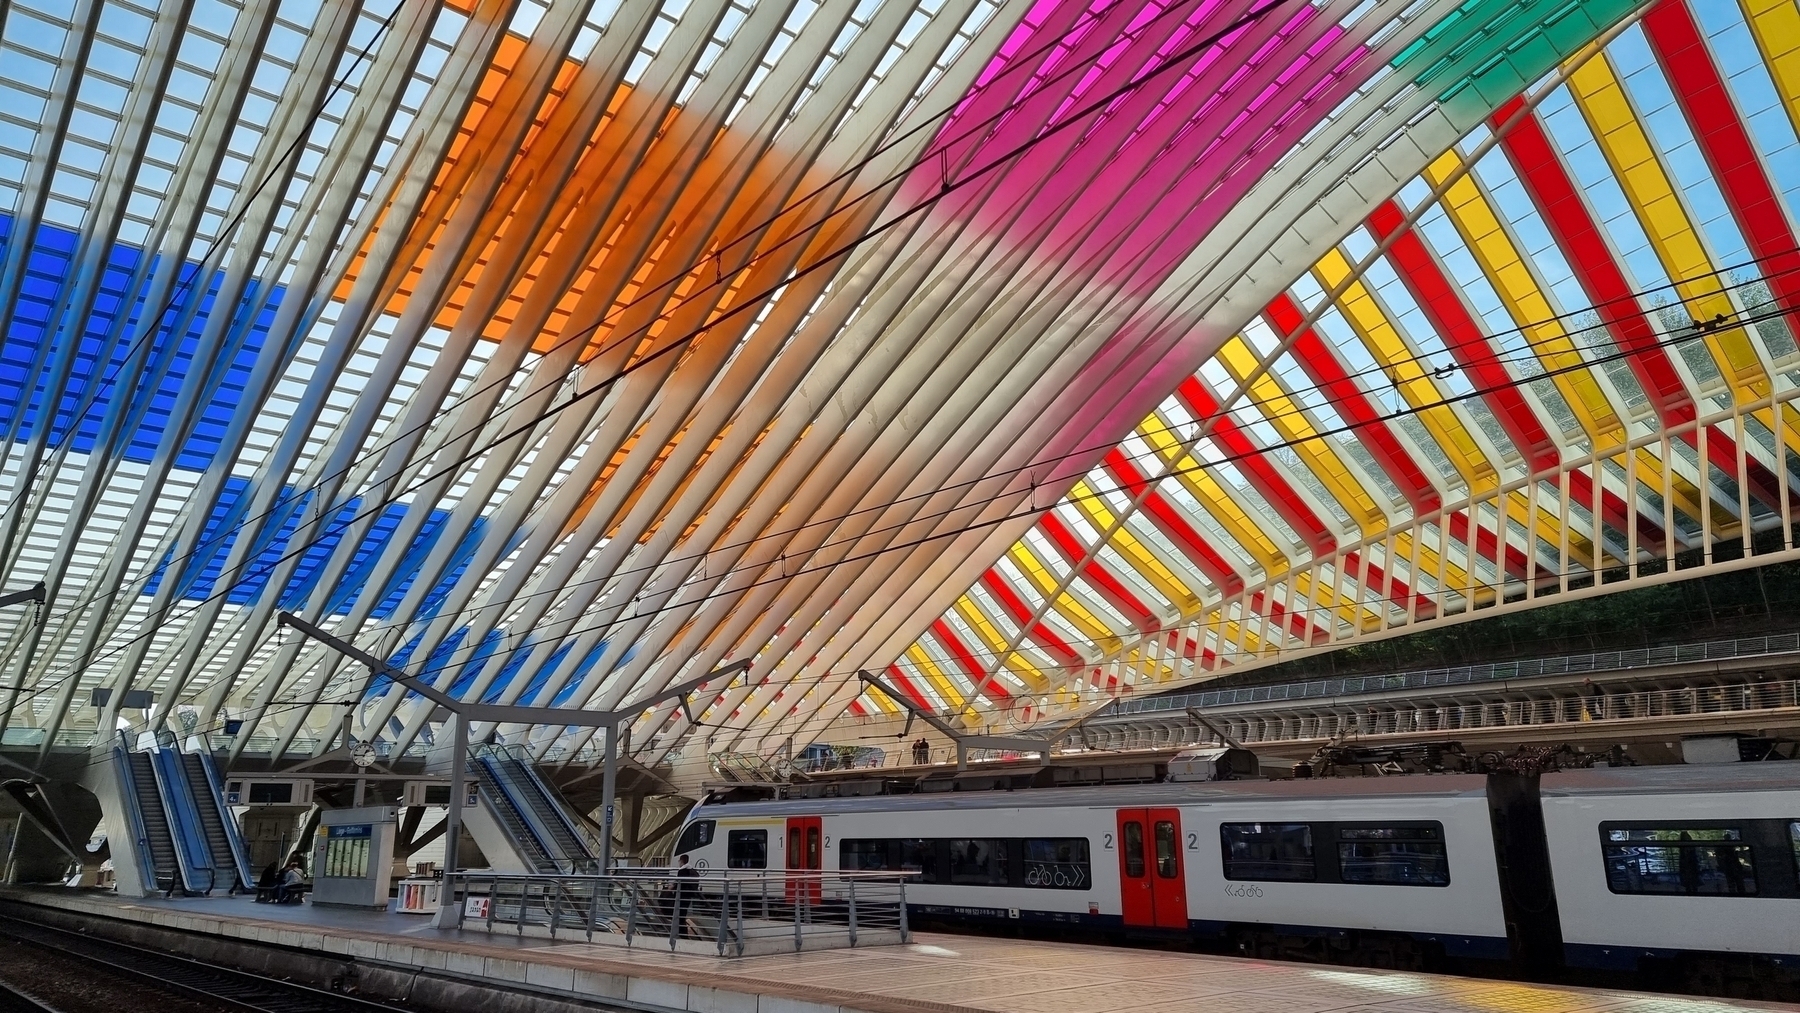 Installation de Daniel Buren à la Gare de Liège Guillemins